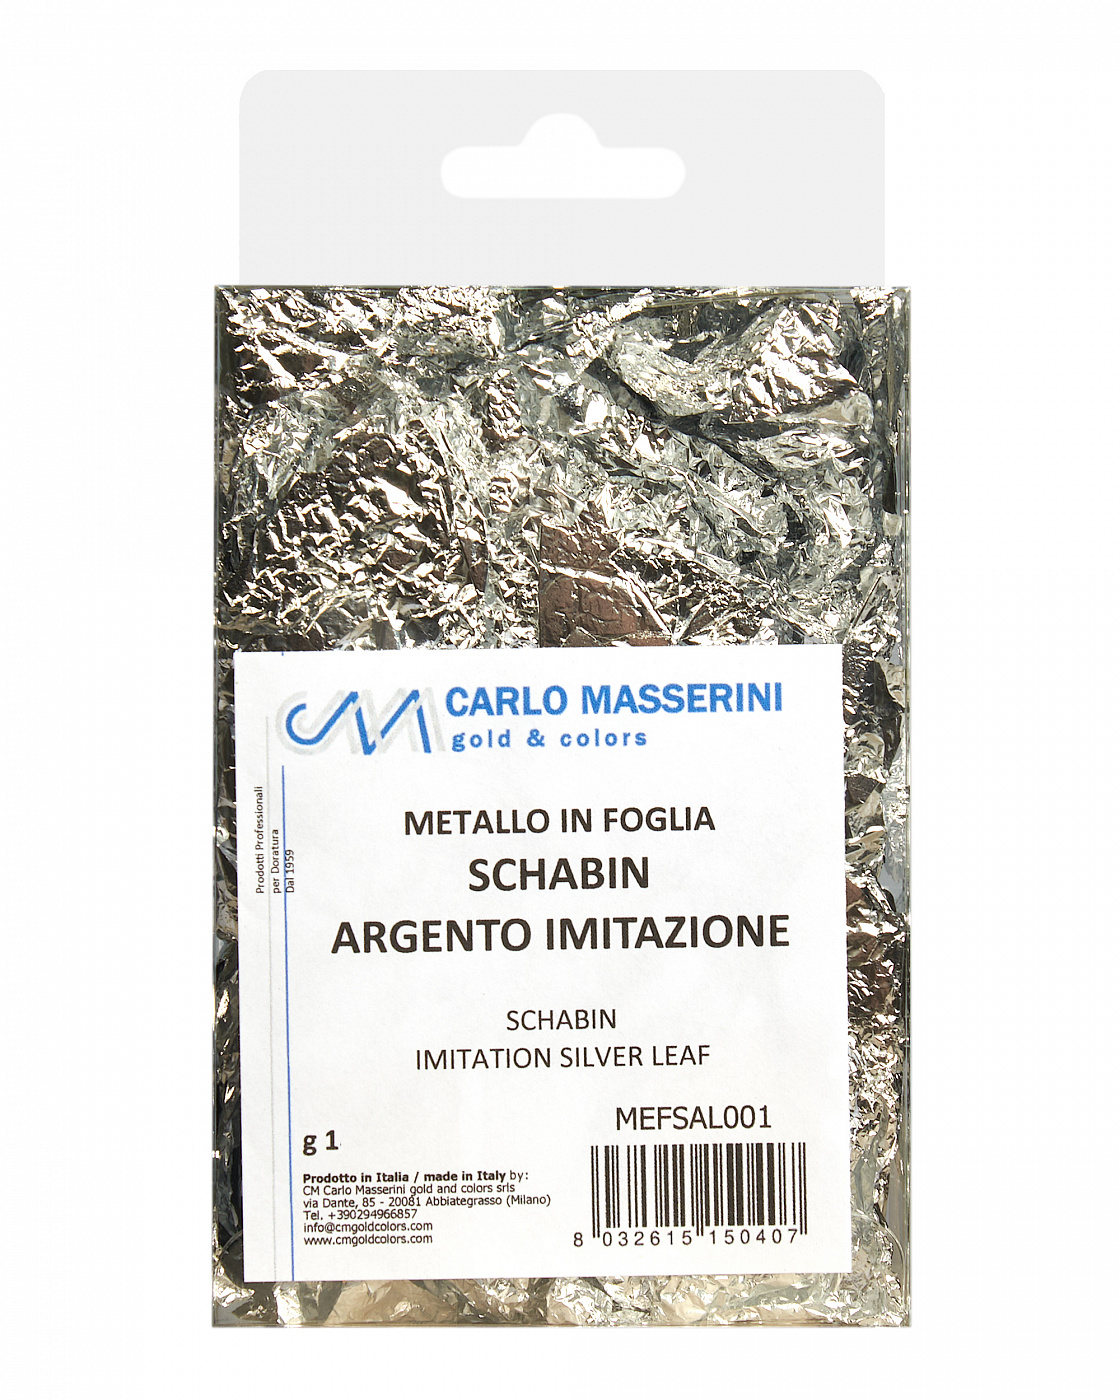 Поталь Masserini имитация серебра шабин (смятые листы) M-MEFSAL001